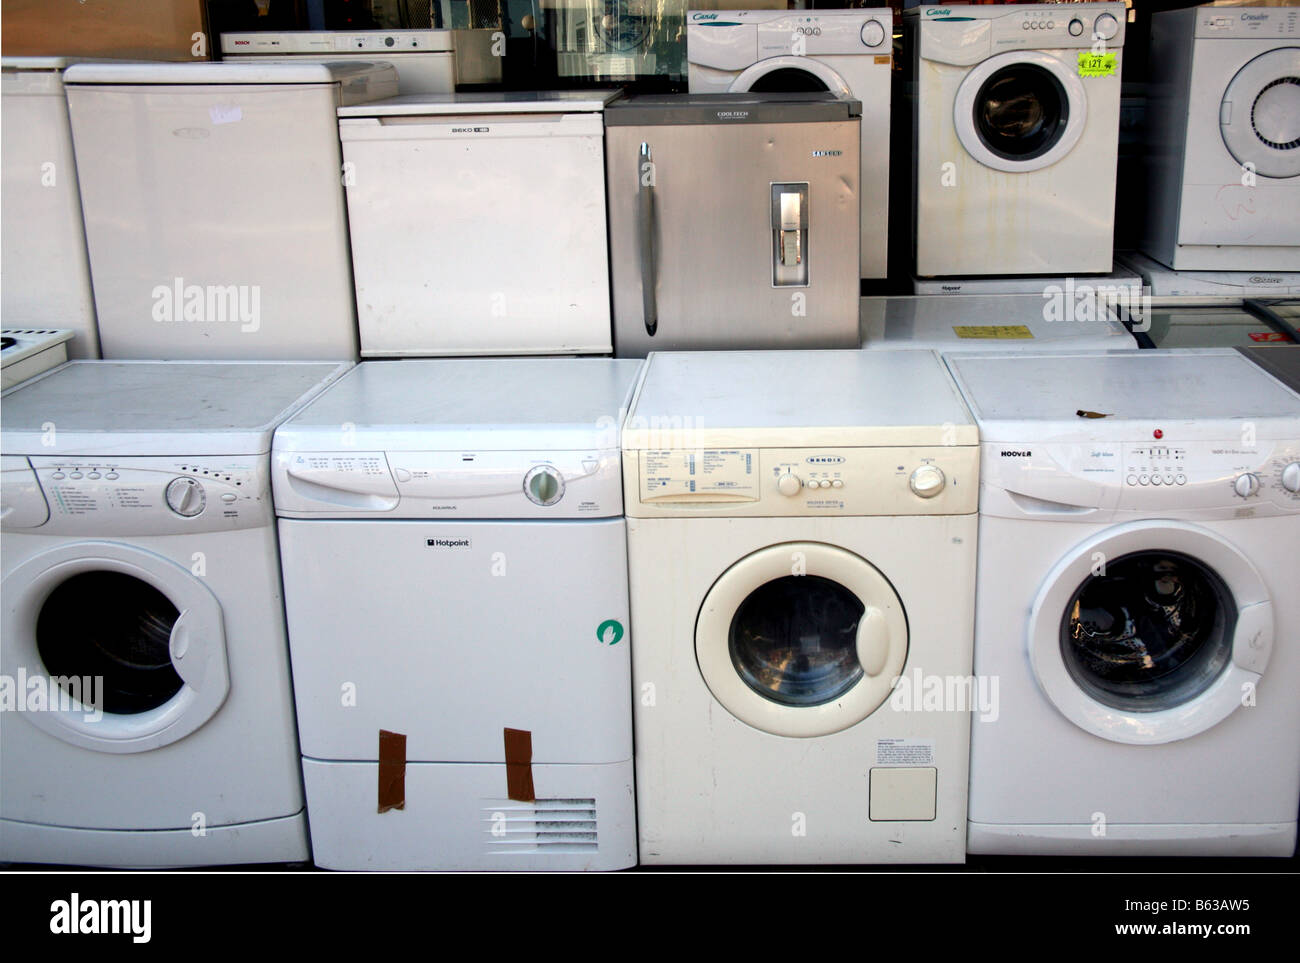 Secondhand washing machines & fridges on sale outside London shop Stock Photo